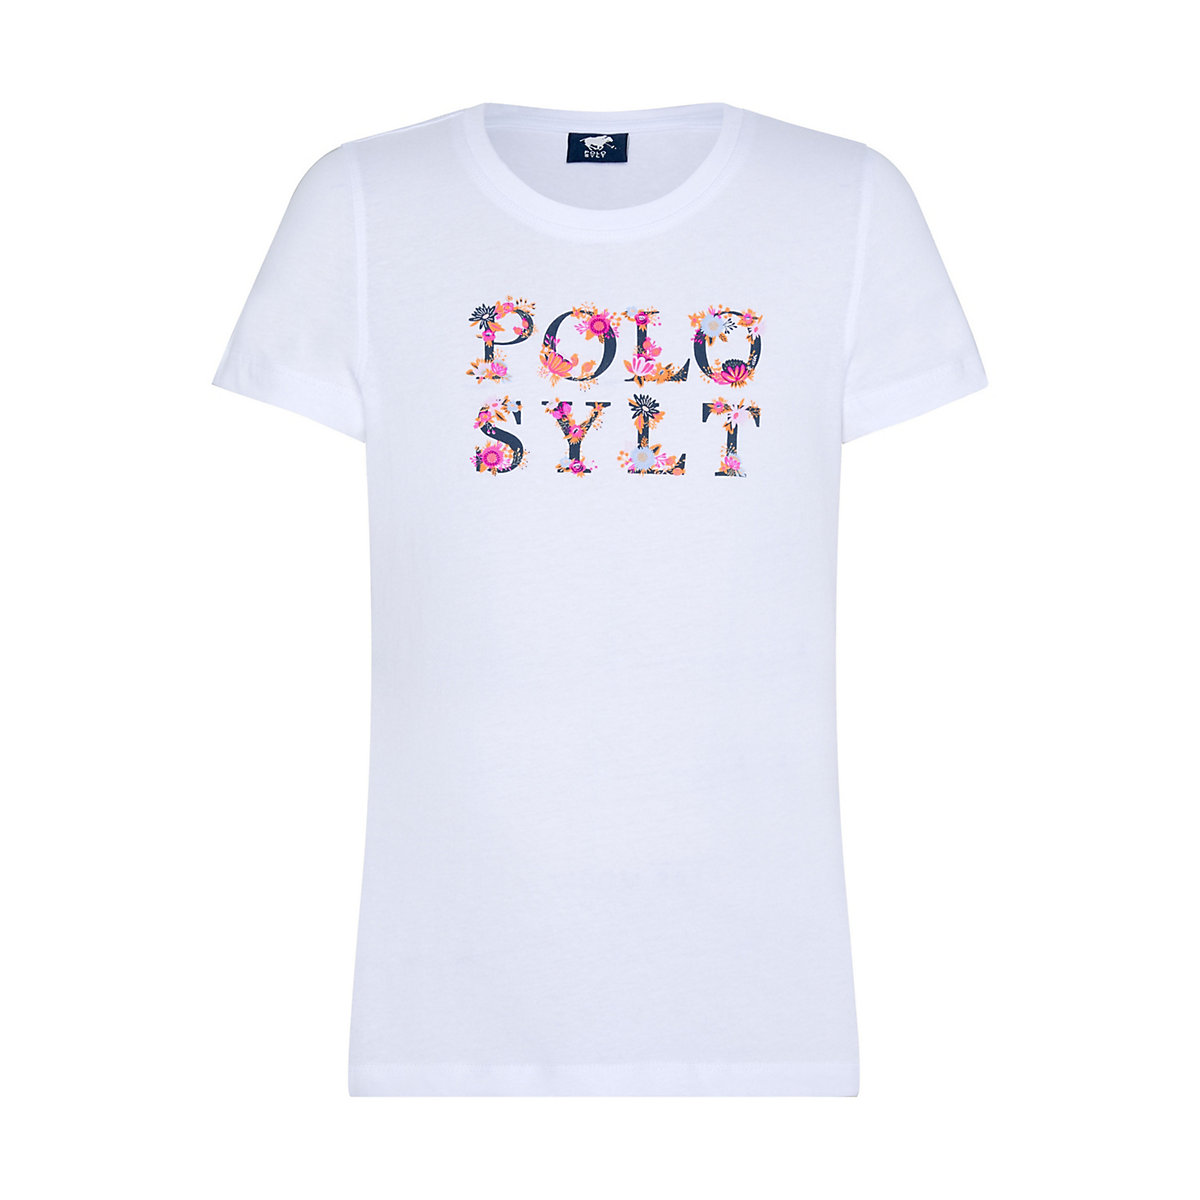 POLO SYLT T-Shirt mit floralem Logodesign T-Shirts für Mädchen weiß